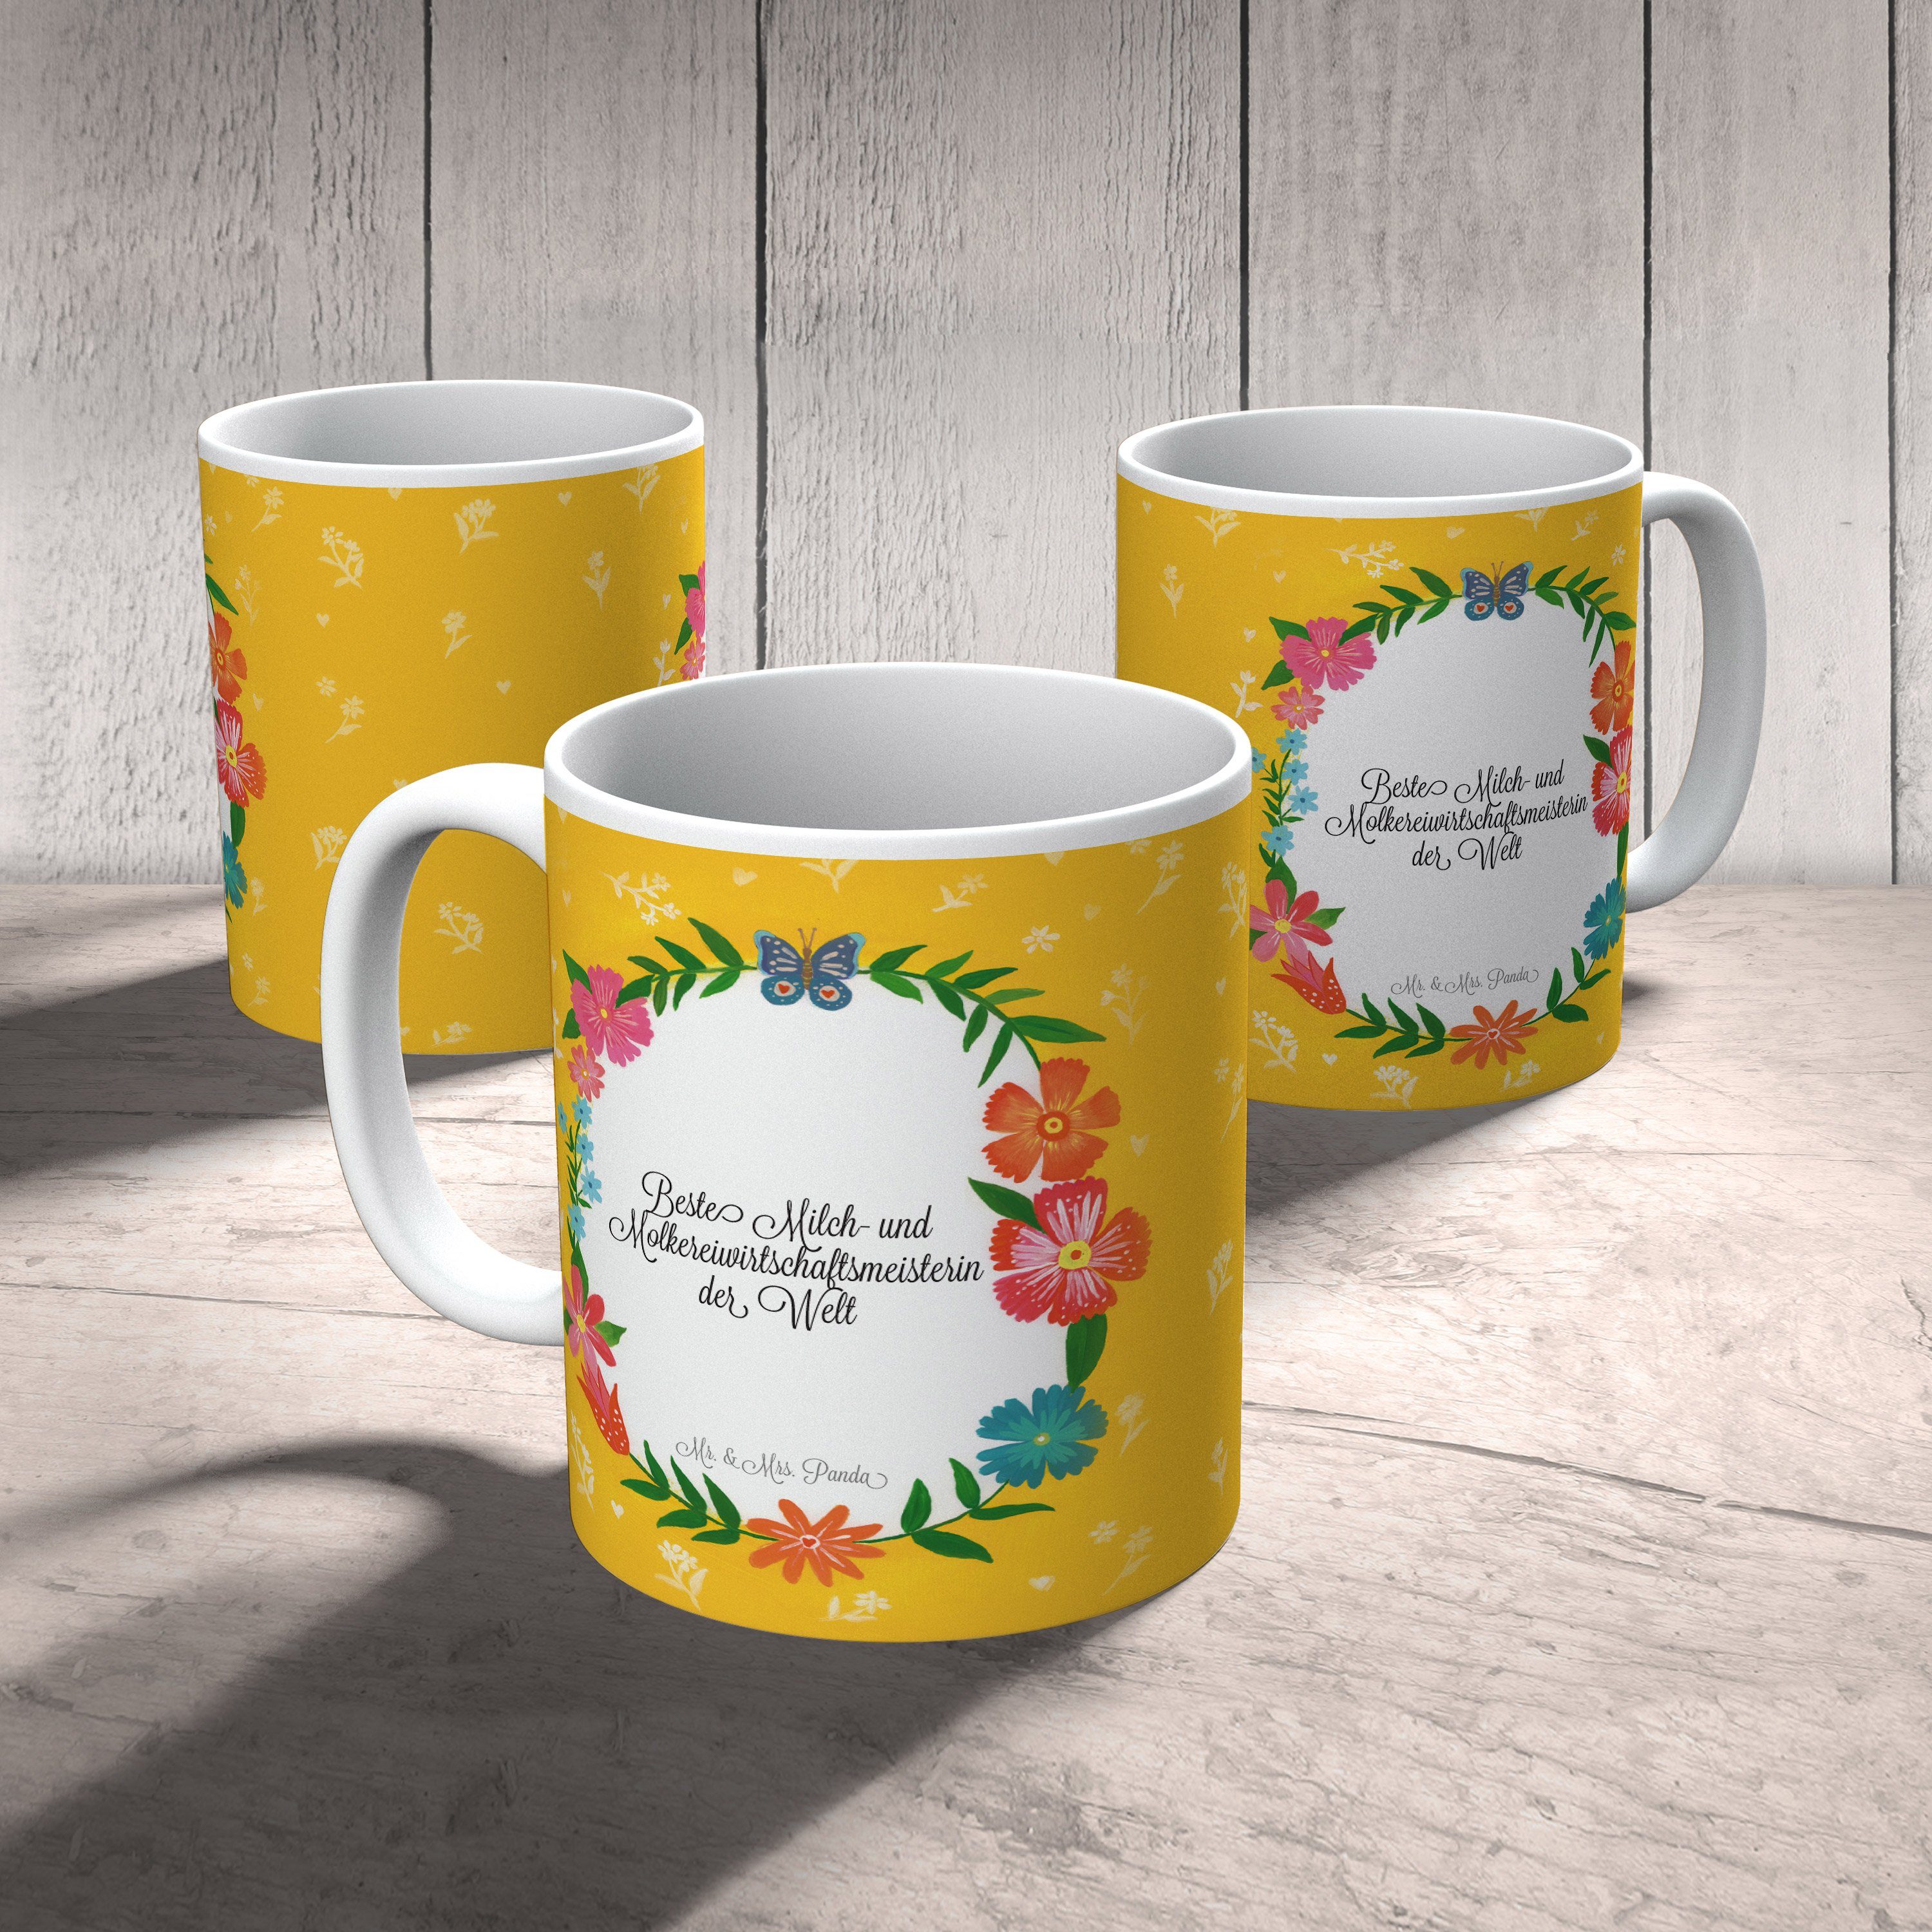 Mr. & Mrs. Milch- Geschenk, und Panda Berufsausbildung, Molkereiwirtschaftsmeisterin - Tasse Keramik